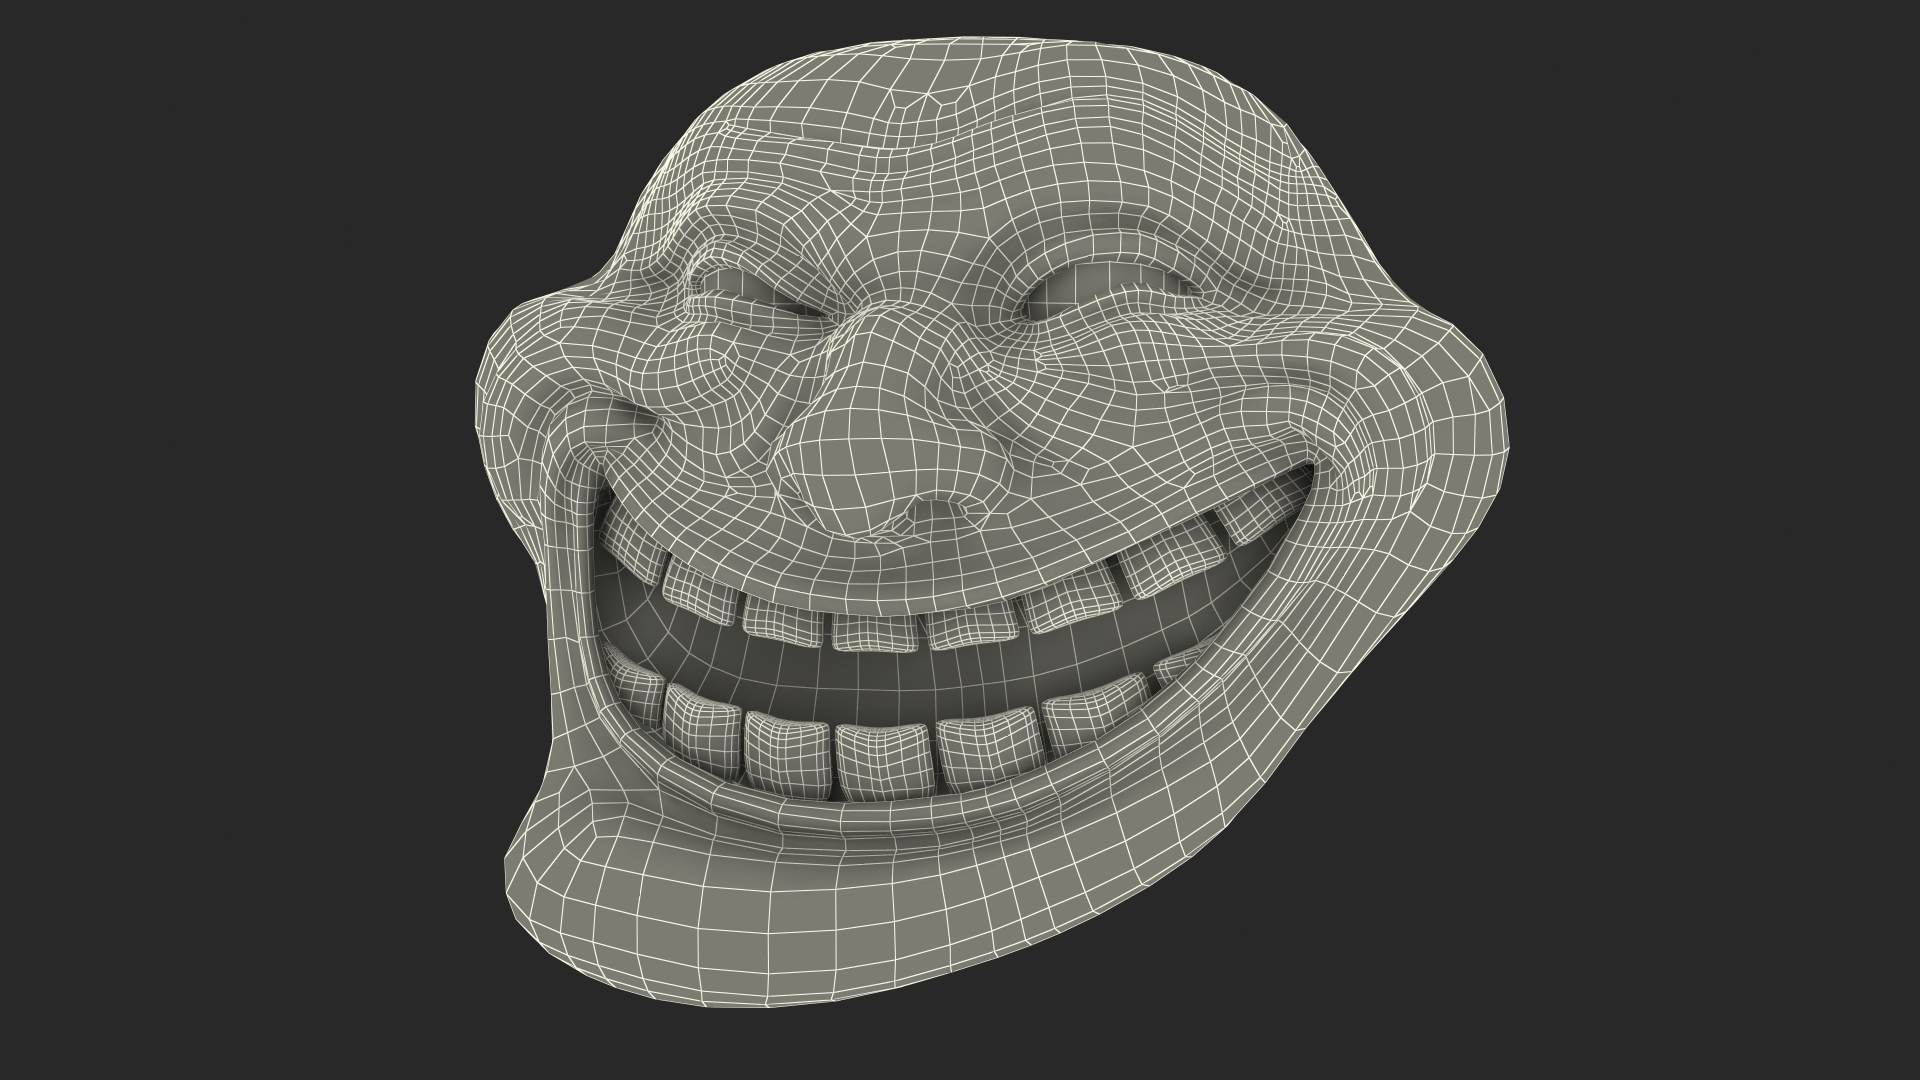 Troll Face 22 – Pattern Crew